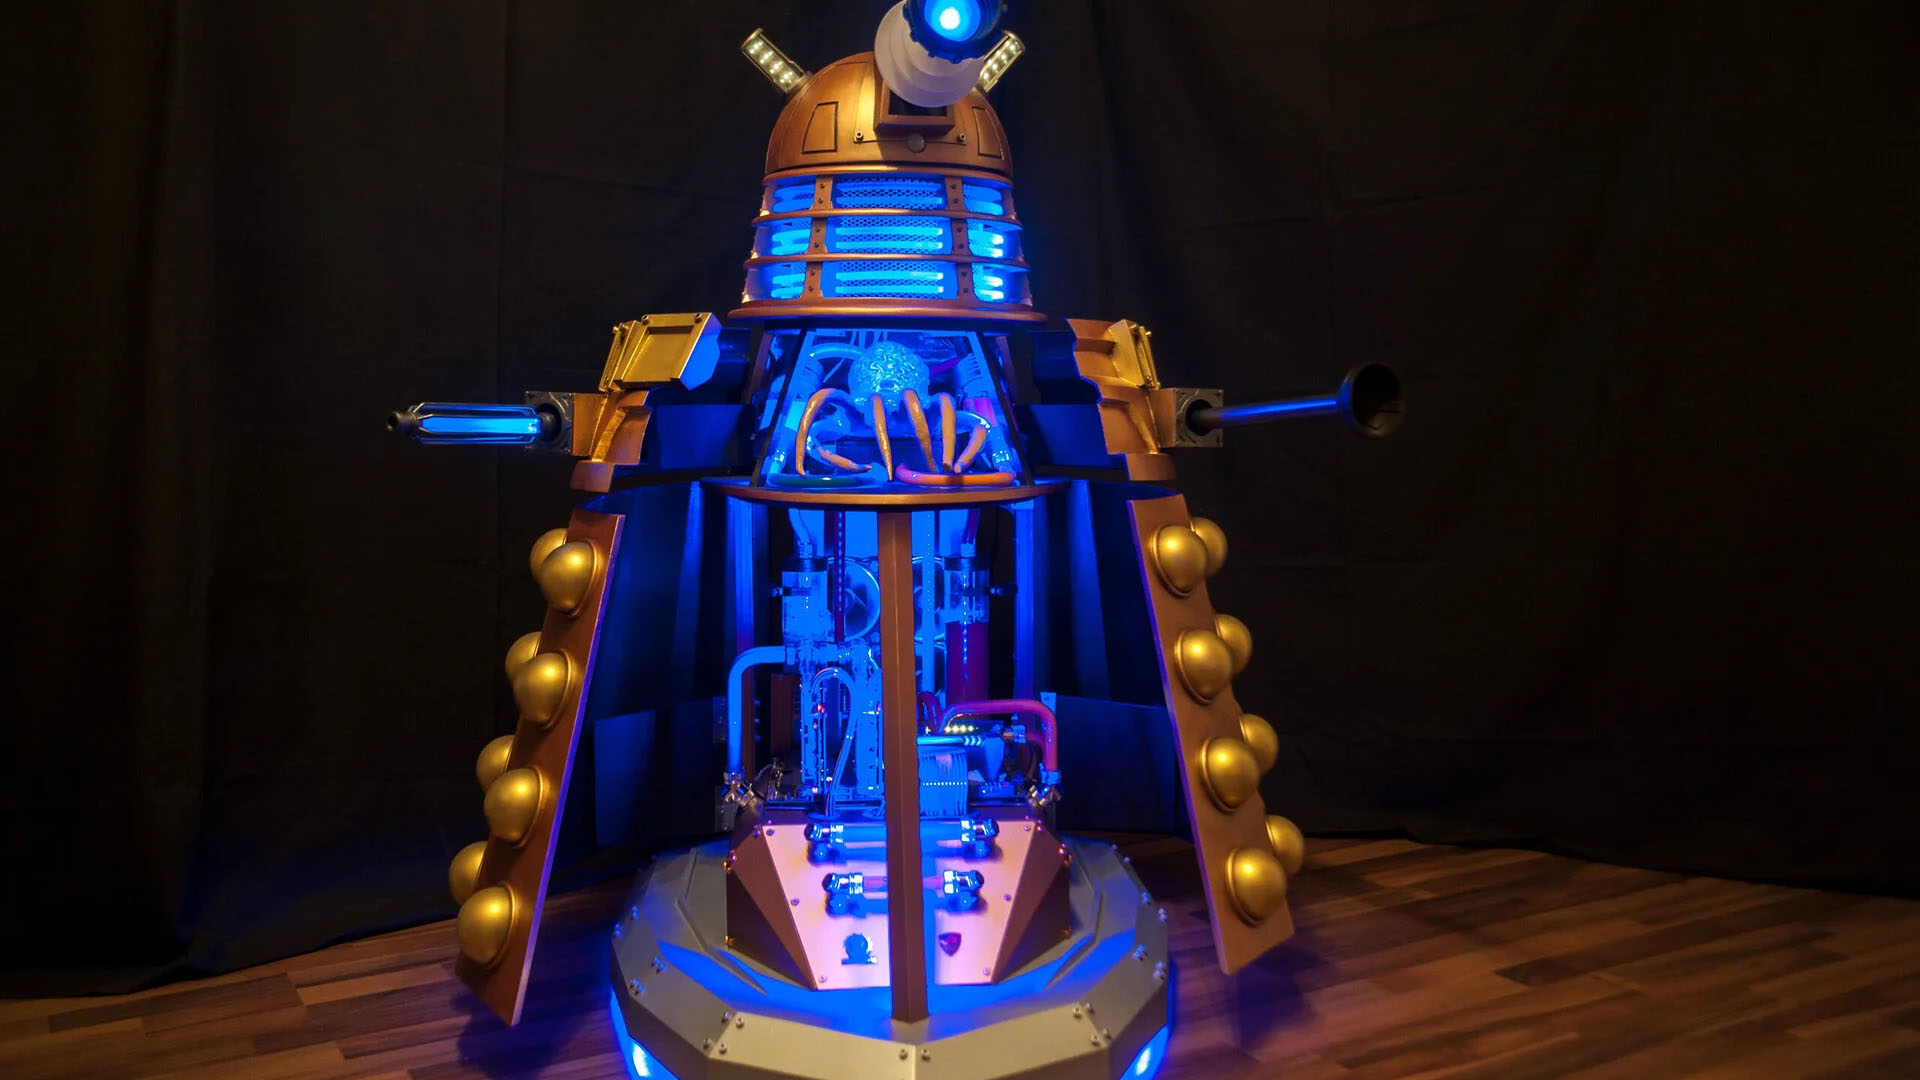 Dr Who Dalek Oyun Bilgisayarı: İçerisi